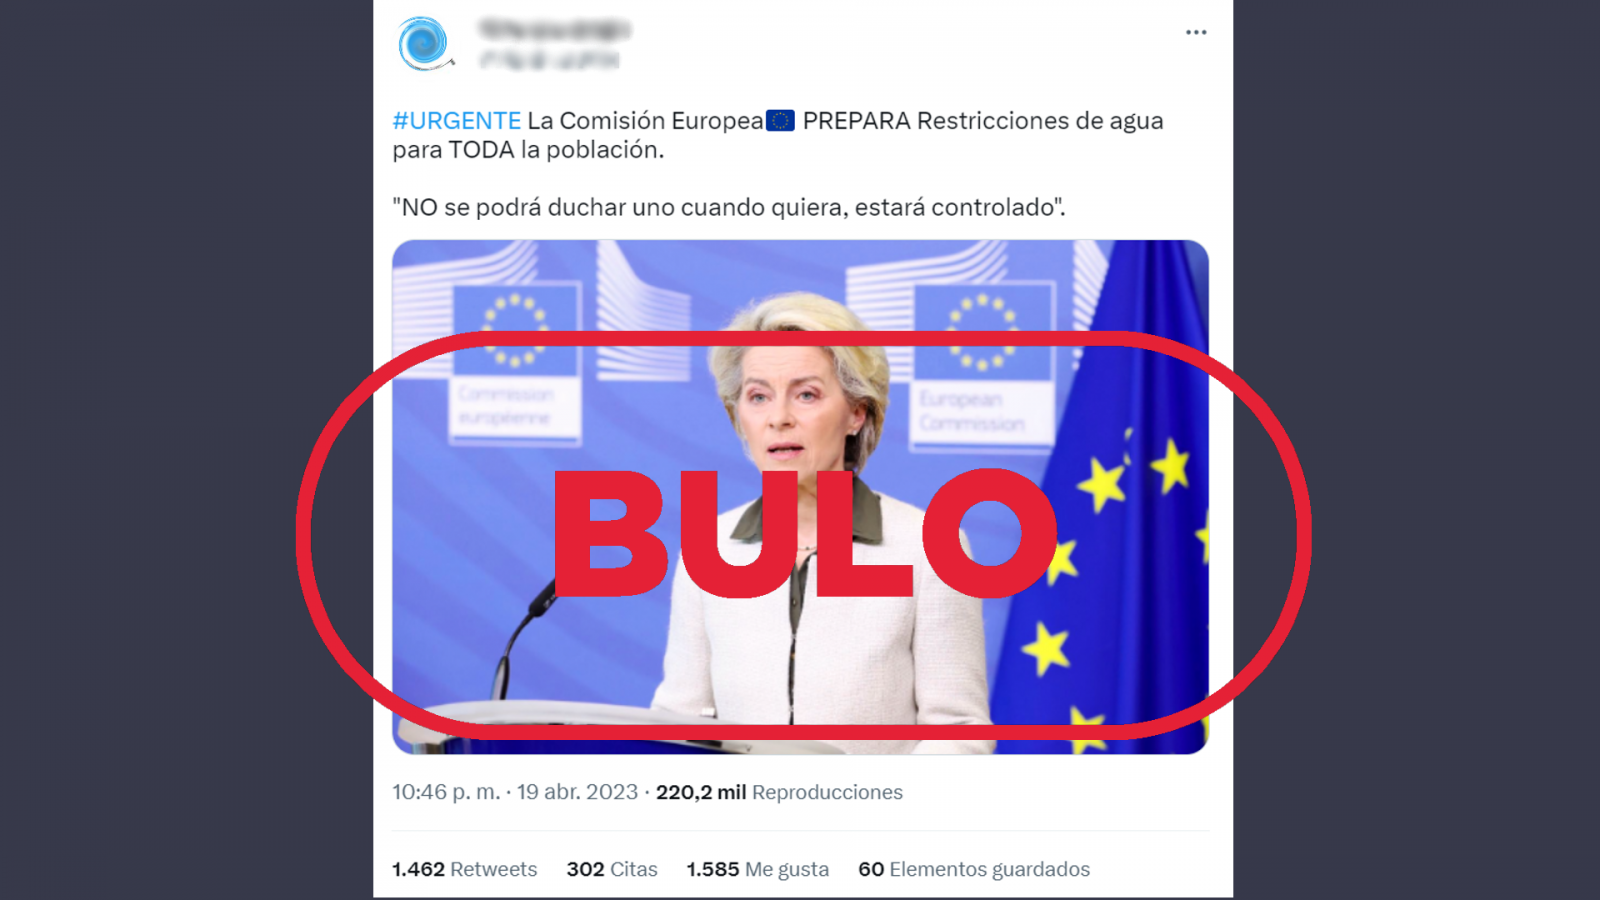 Tuit que difunde el bulo de que la Comisión Europea prepara restricciones de agua para toda la población, con el sello 'bulo' en rojo